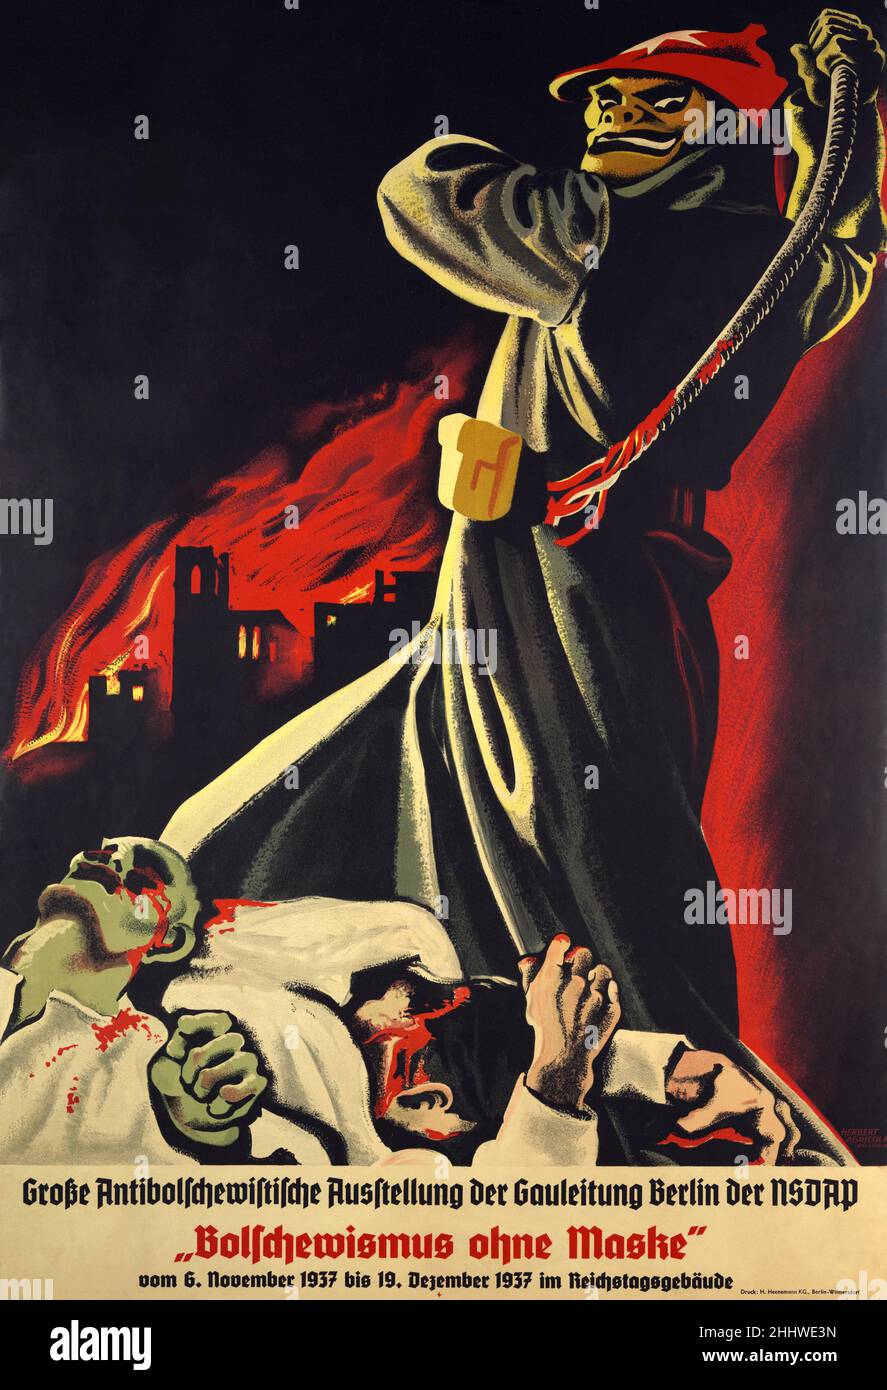 Ein Nazi-antibolschewistisches Propagandaplakat vor dem Krieg, auf dem eine dämonische Figur mit einer Arbeitertunika und einem roten Hut zeigt, die blutende Körper mit einer brennenden Stadt im Hintergrund peitscht. Die Überschrift lautet Bolschewismus Unmasked. Stockfoto